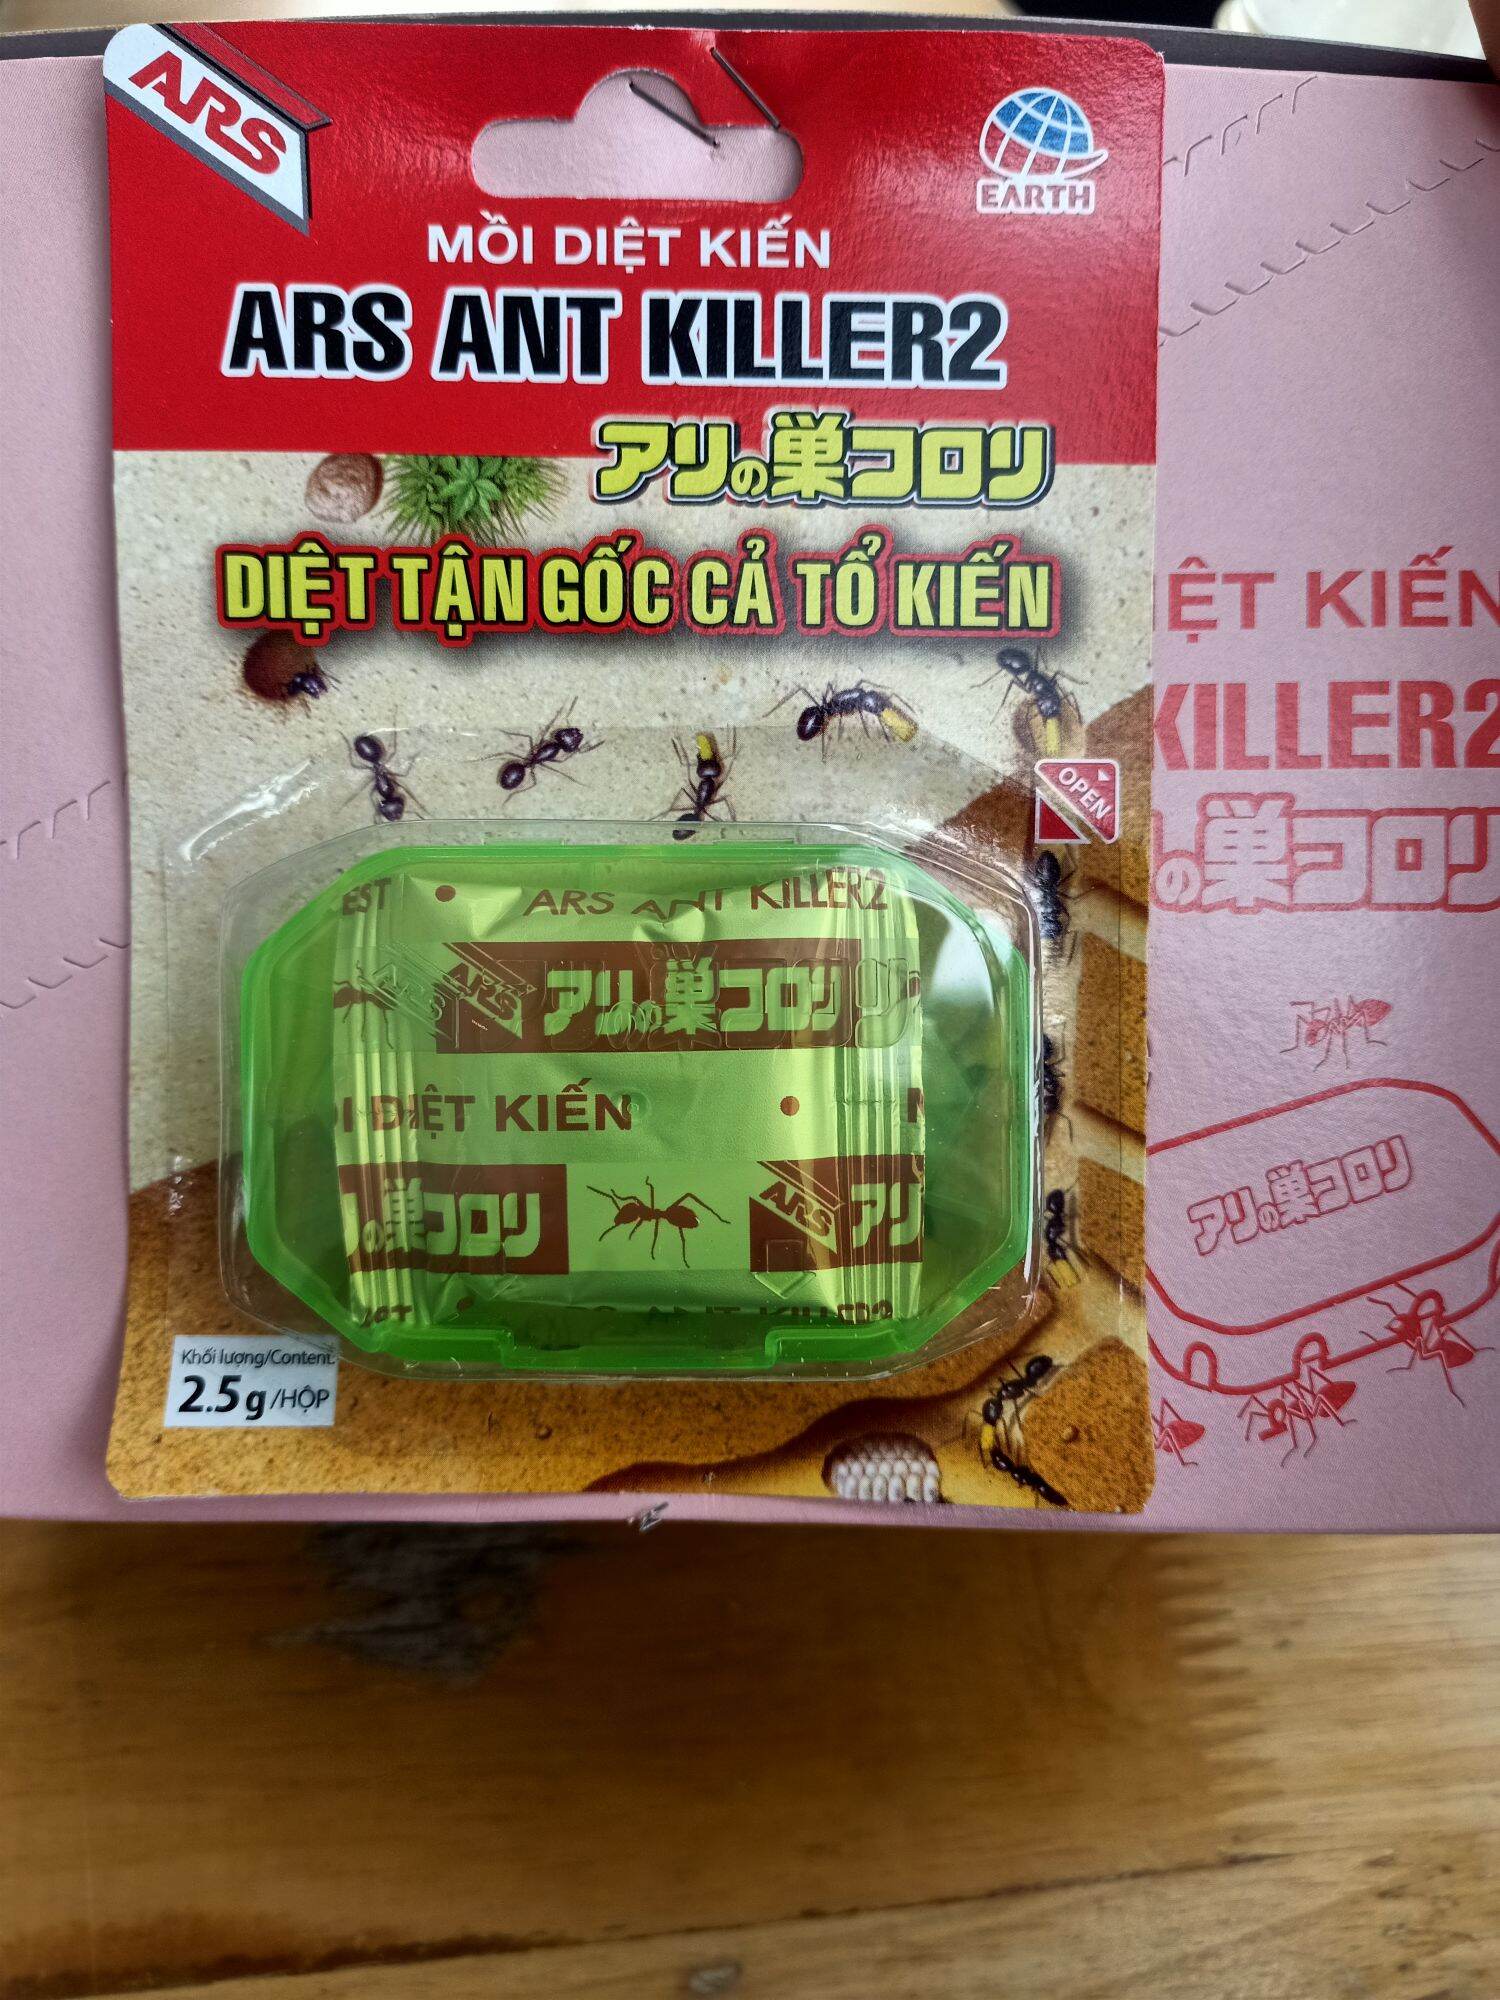 Mồi diệt kiến Ars ant killer